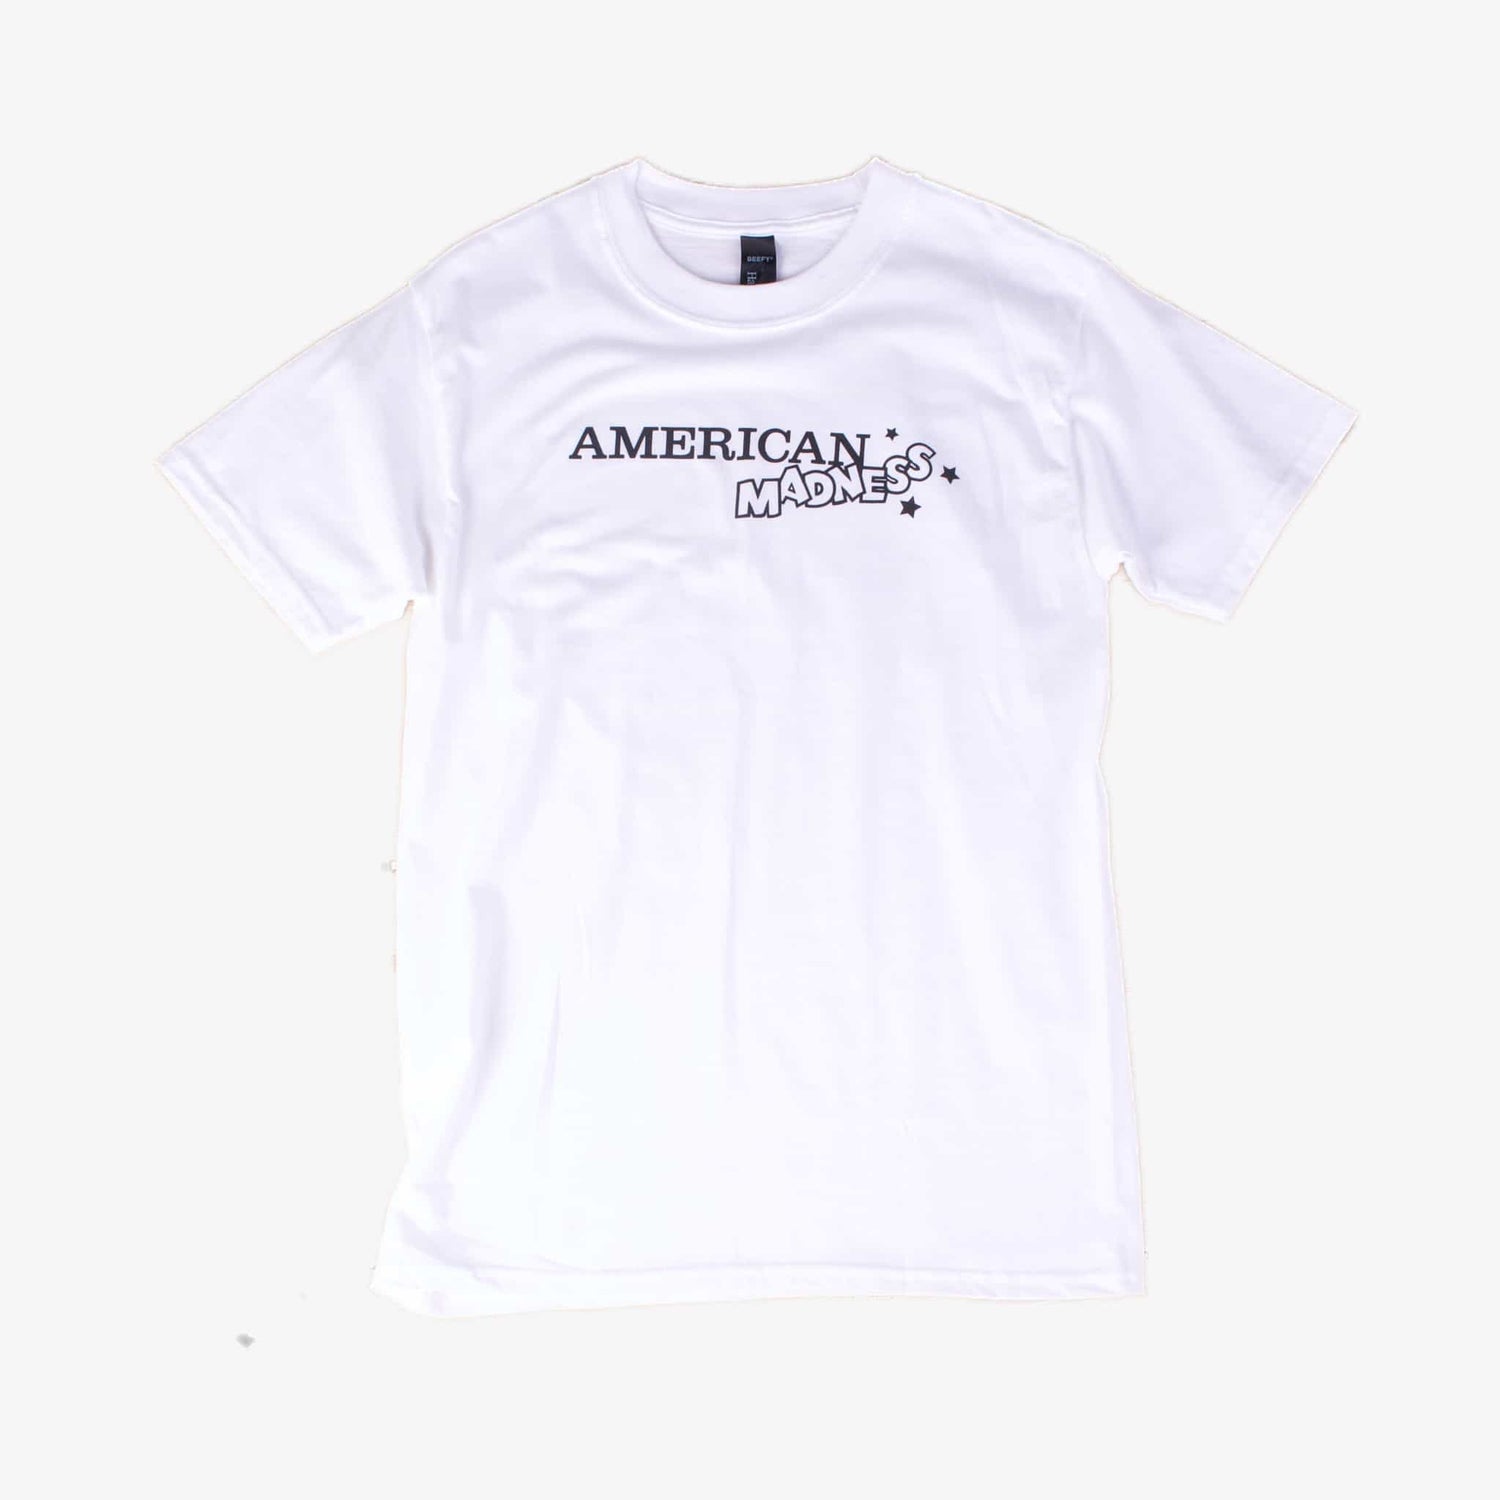 American Madness T-Shirts